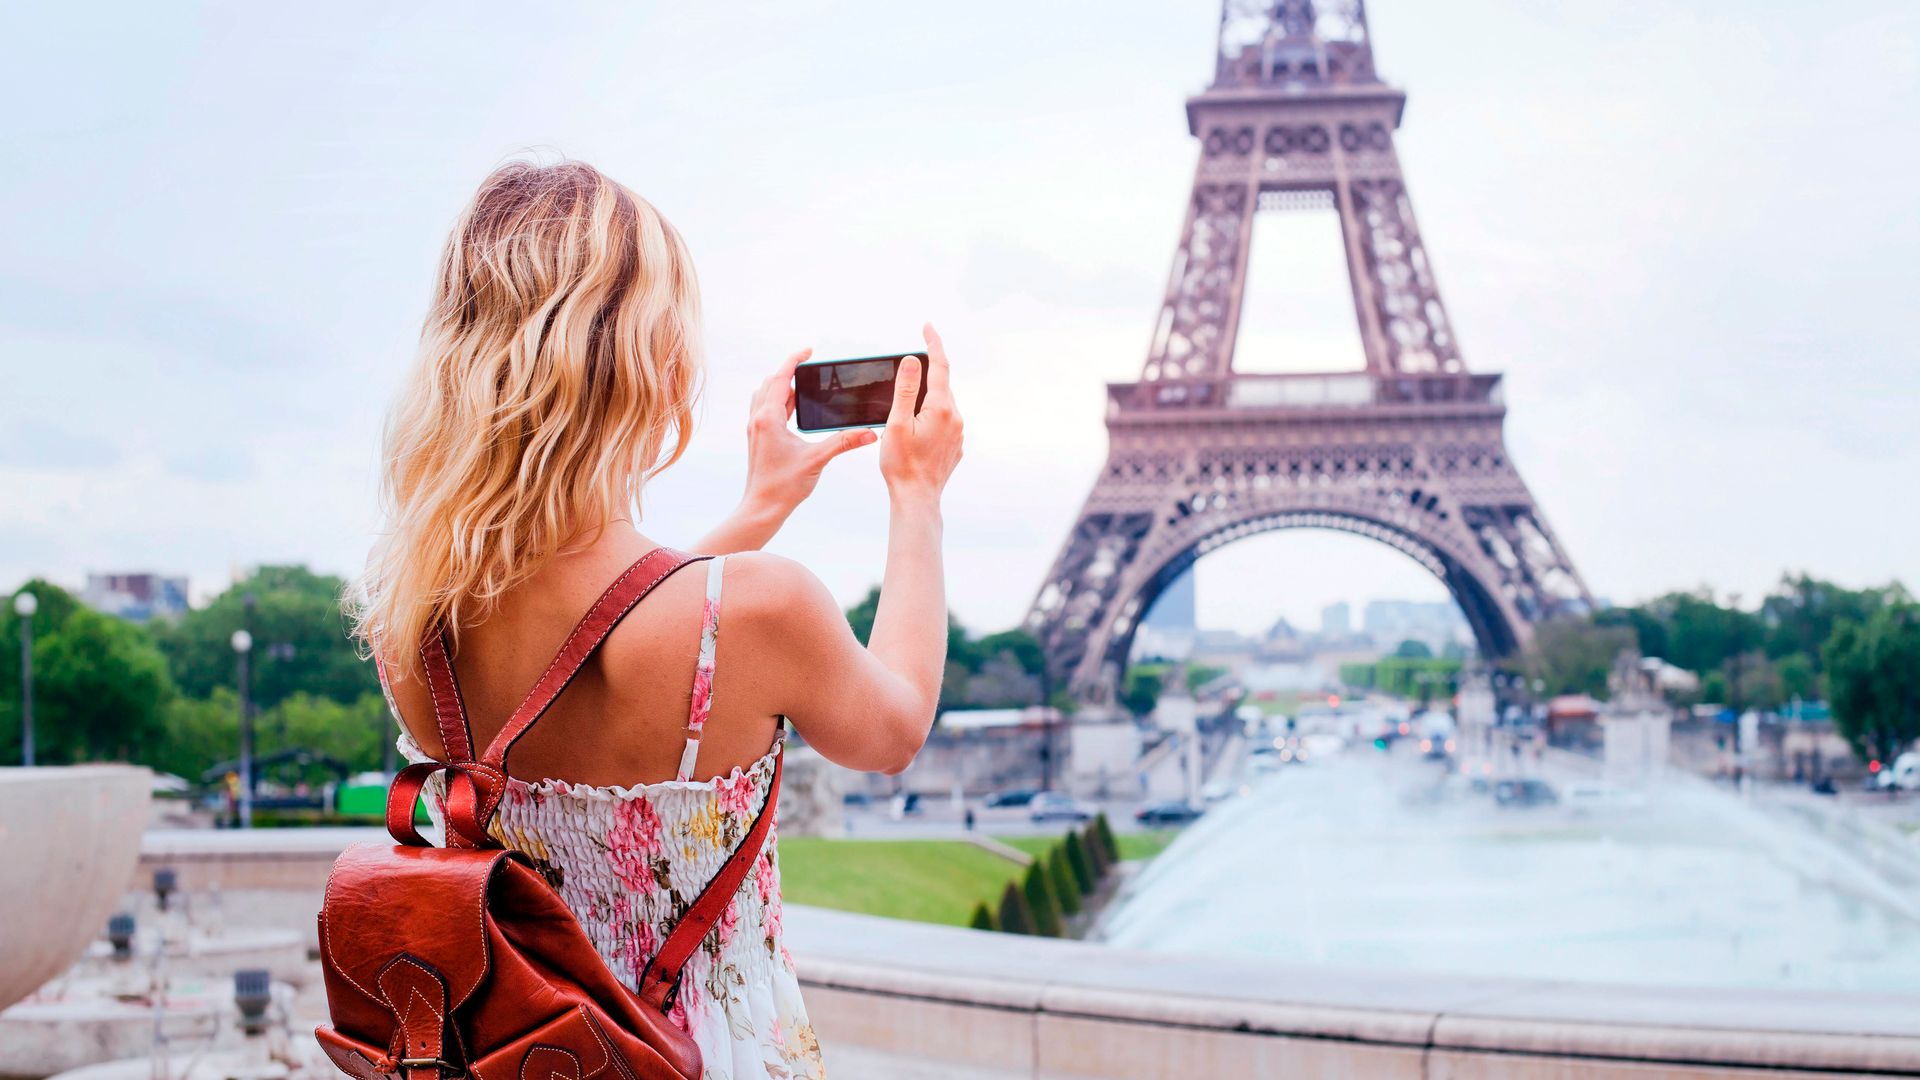 Turista tomando una foto de la torre Eiffel de París durante el verano